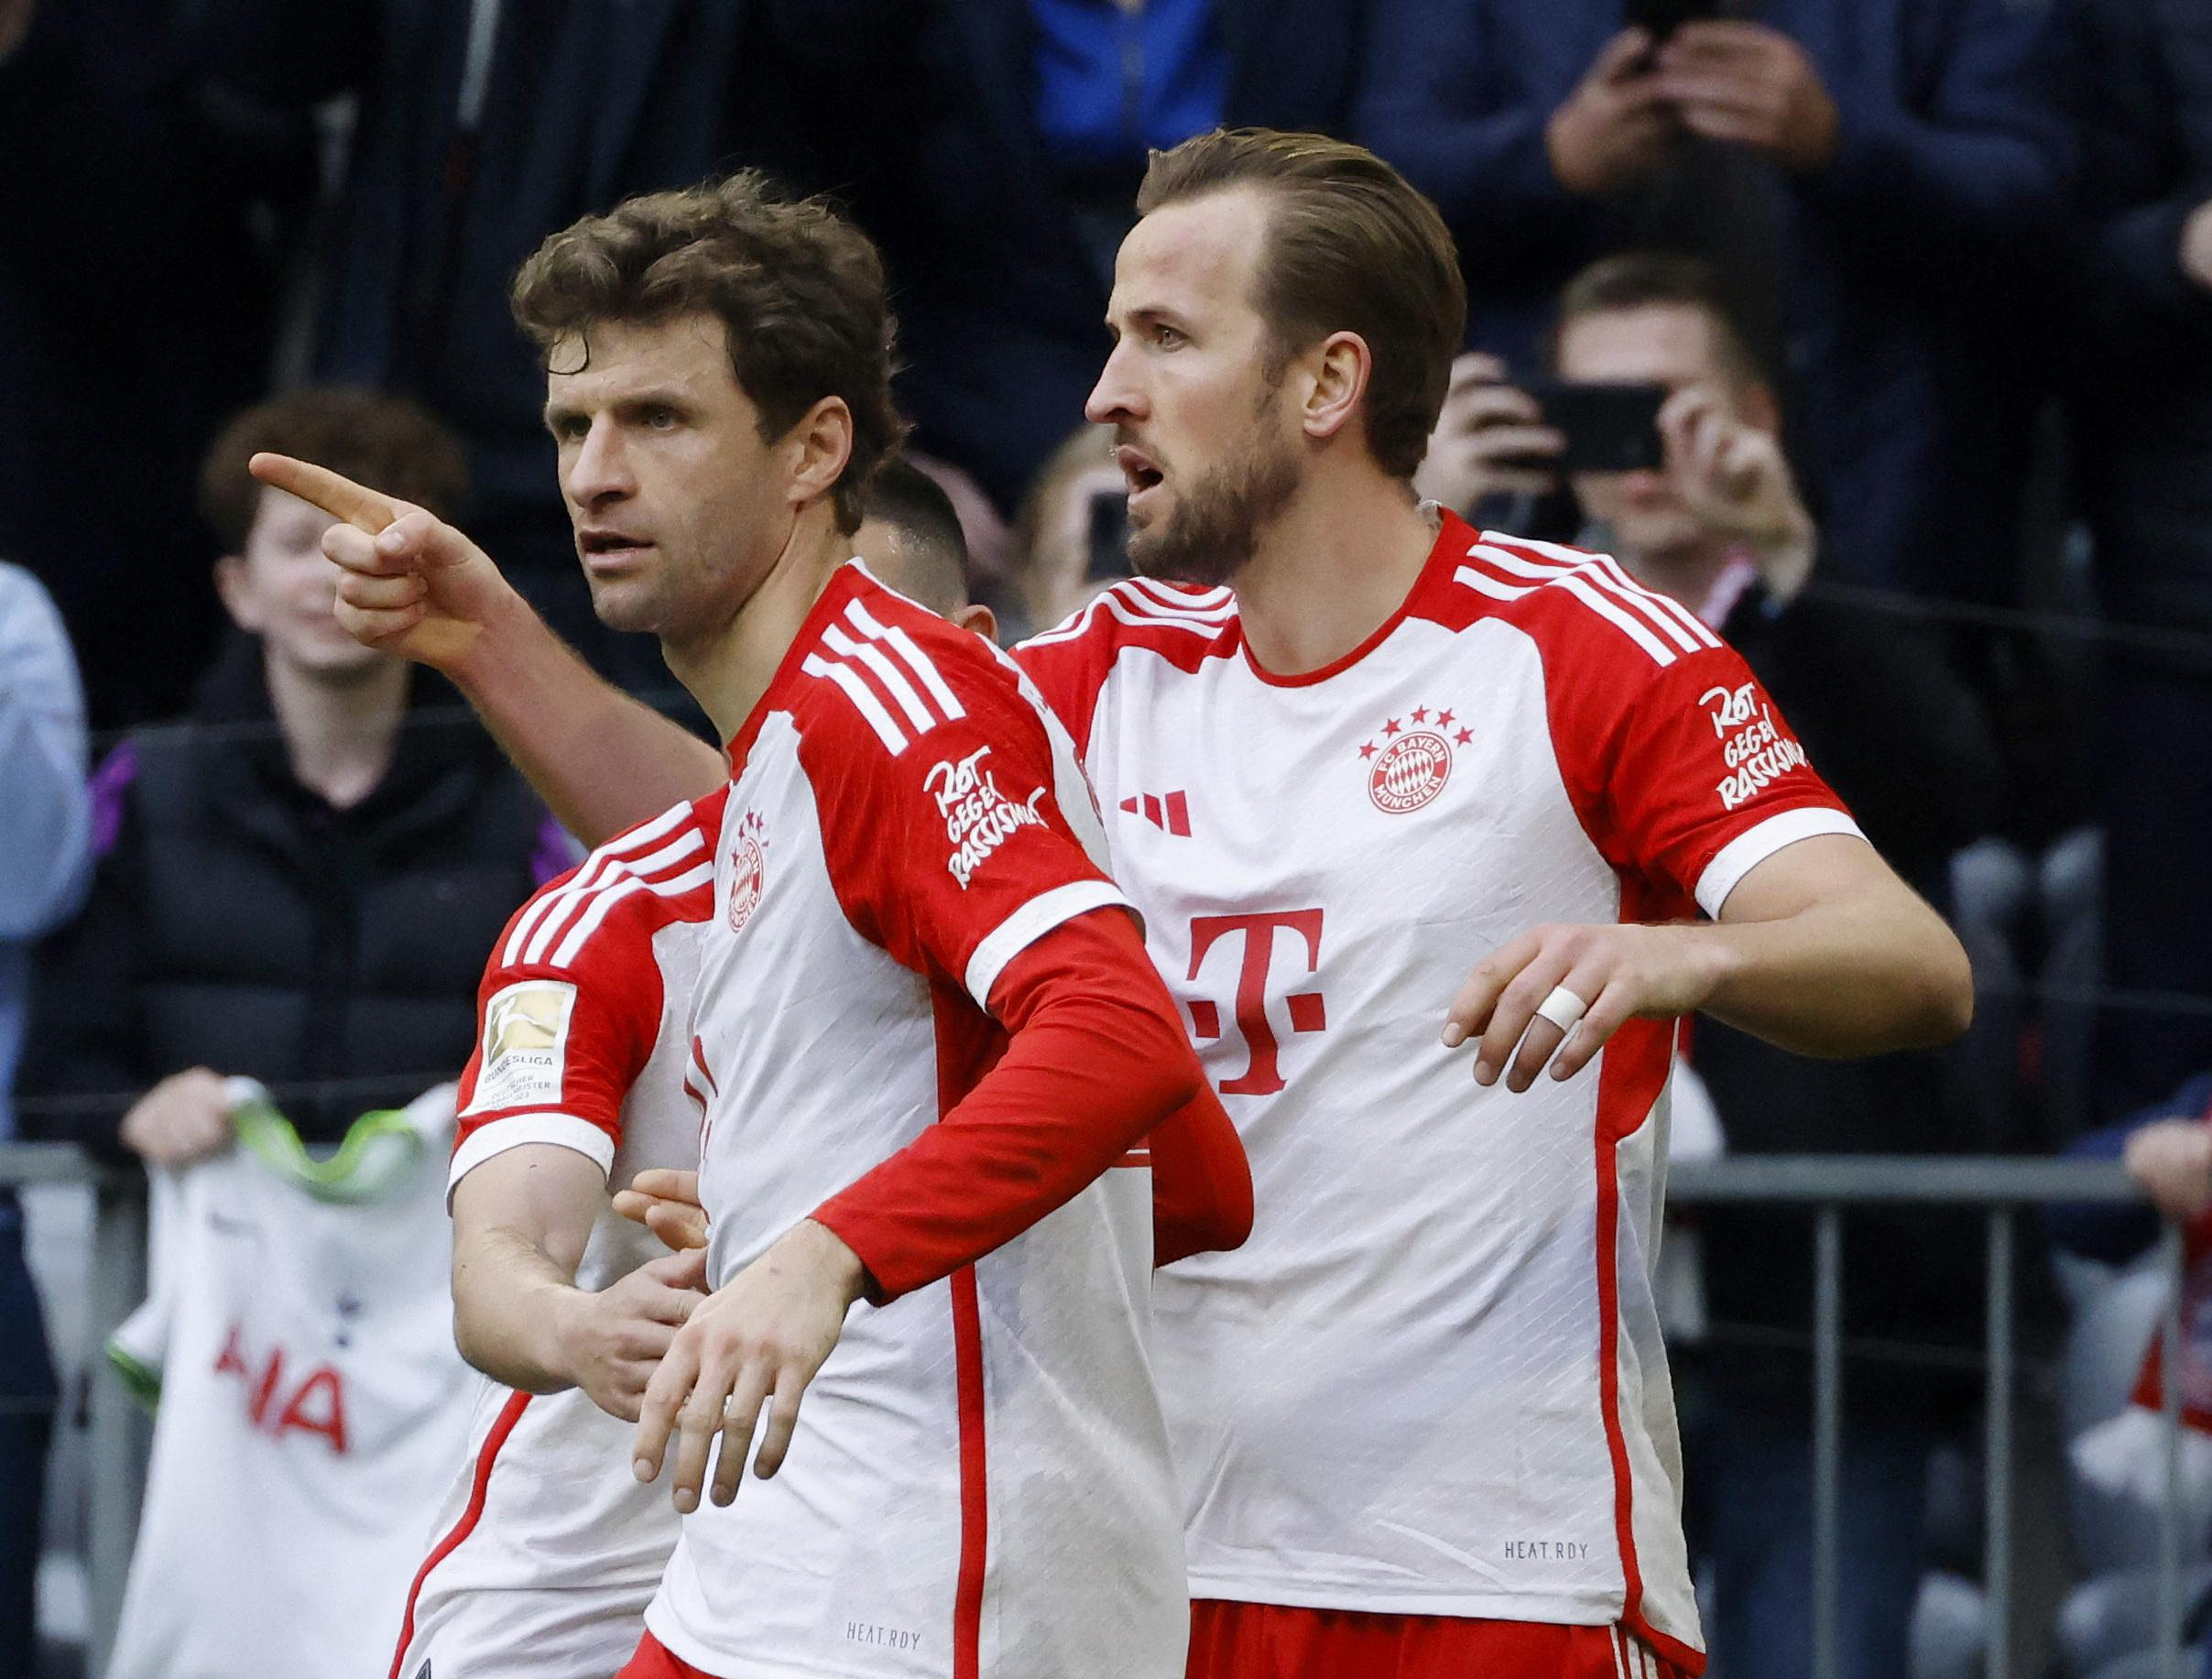 Bundesliga: Bayern scores eight goals in Mainz